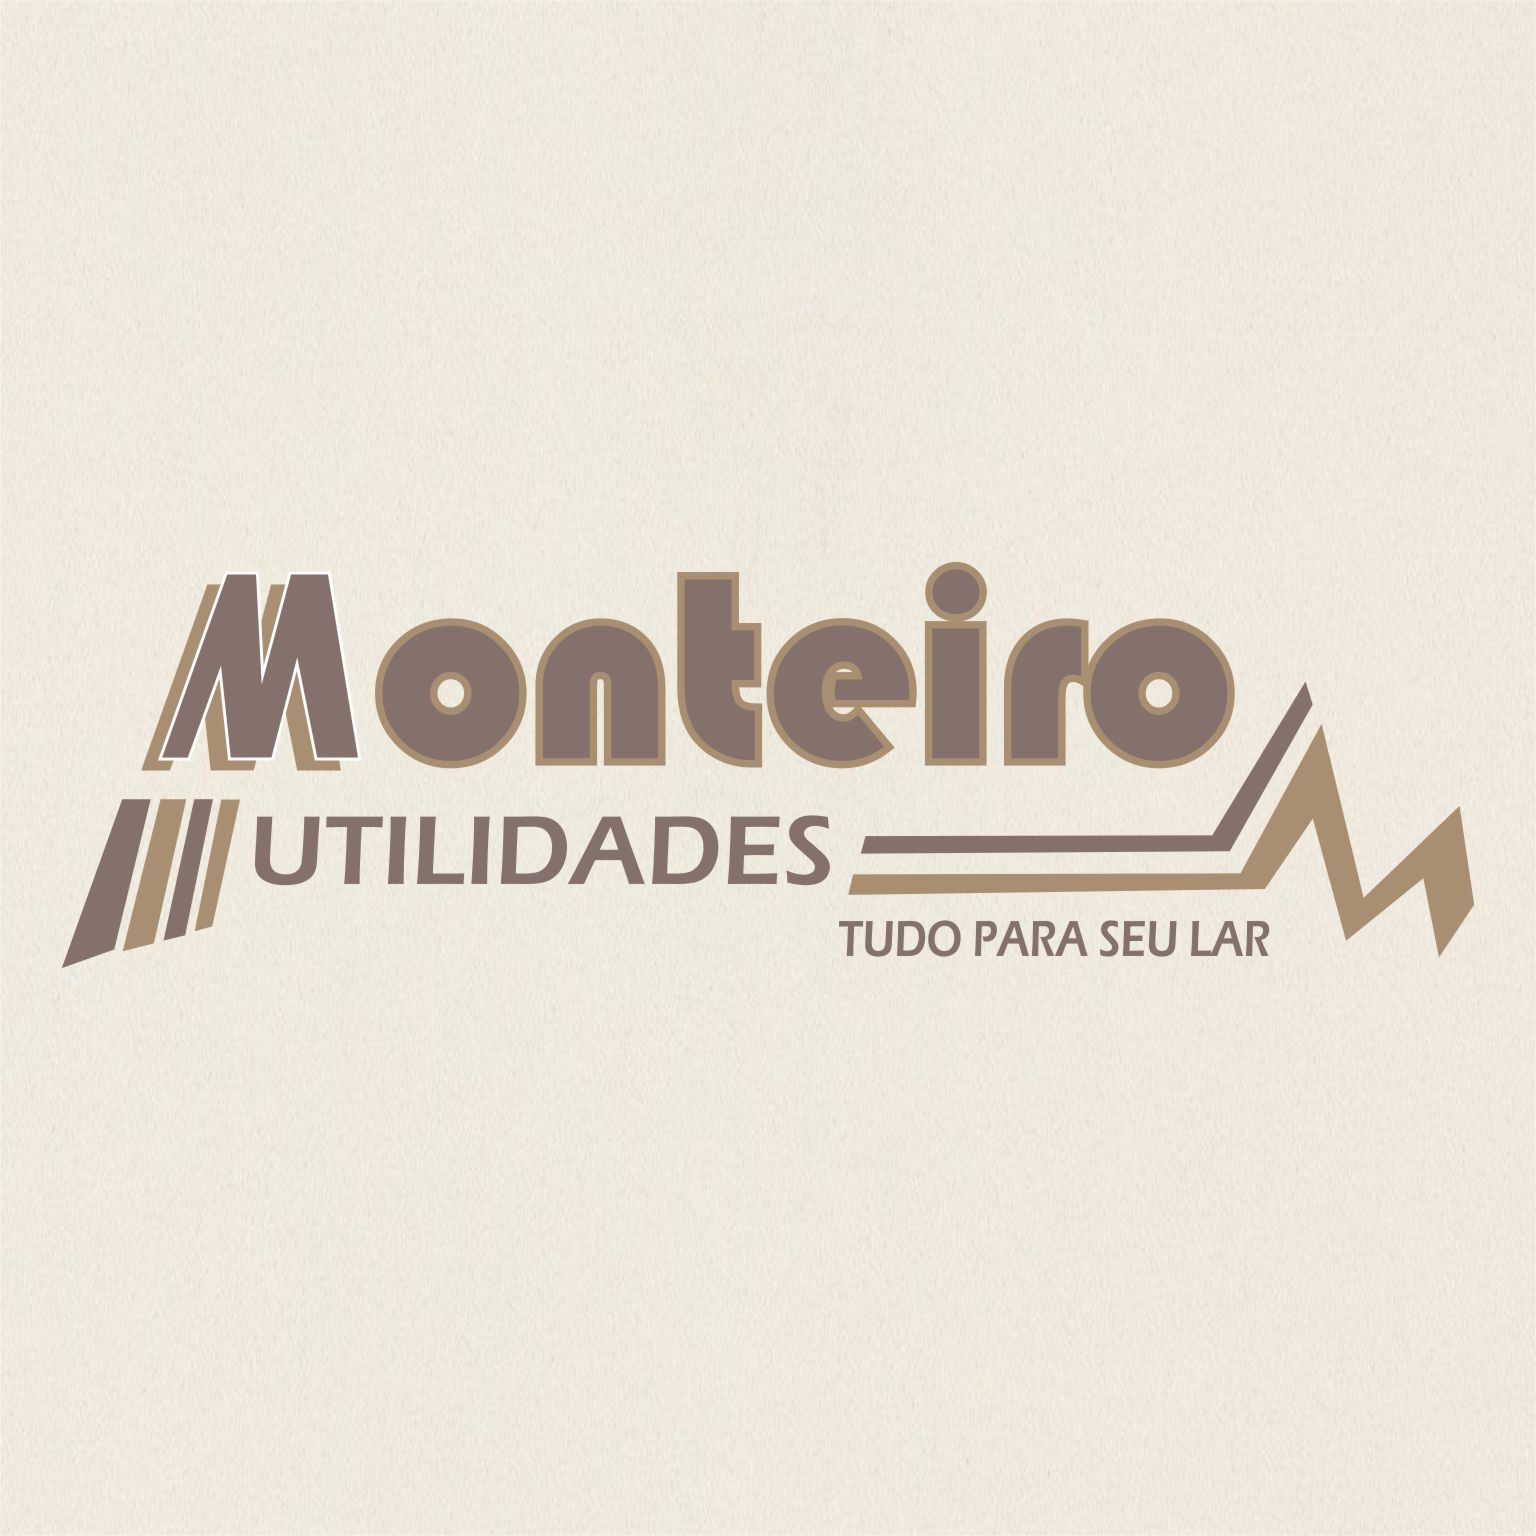 Monteiro Utilidades